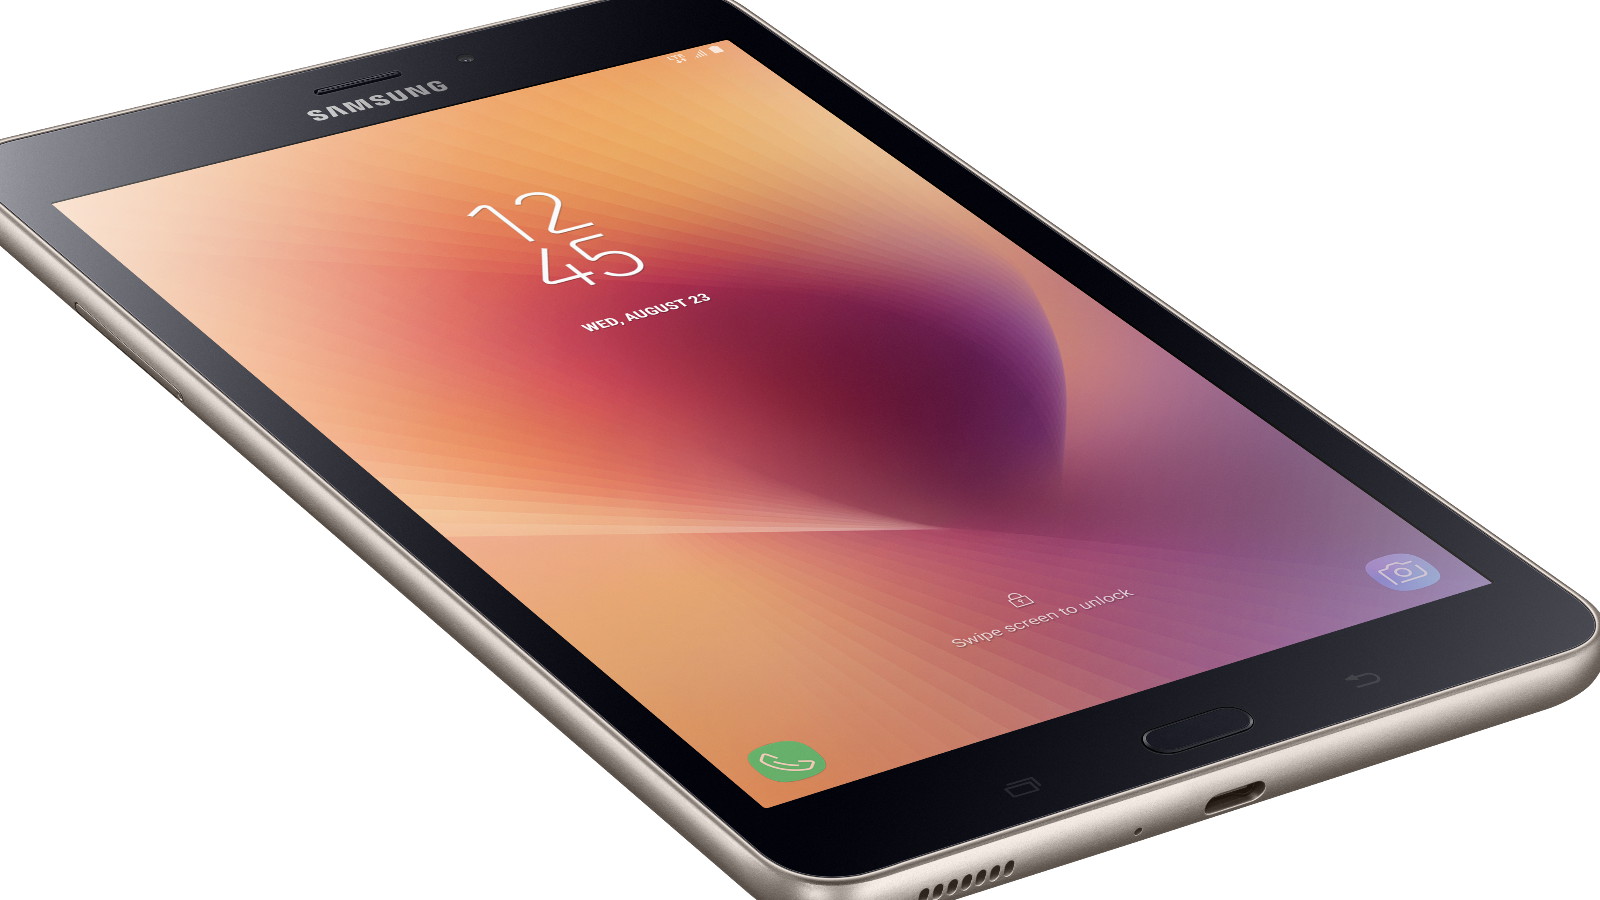 Samsung Galaxy Tab A7 Lte 32gb Отзывы